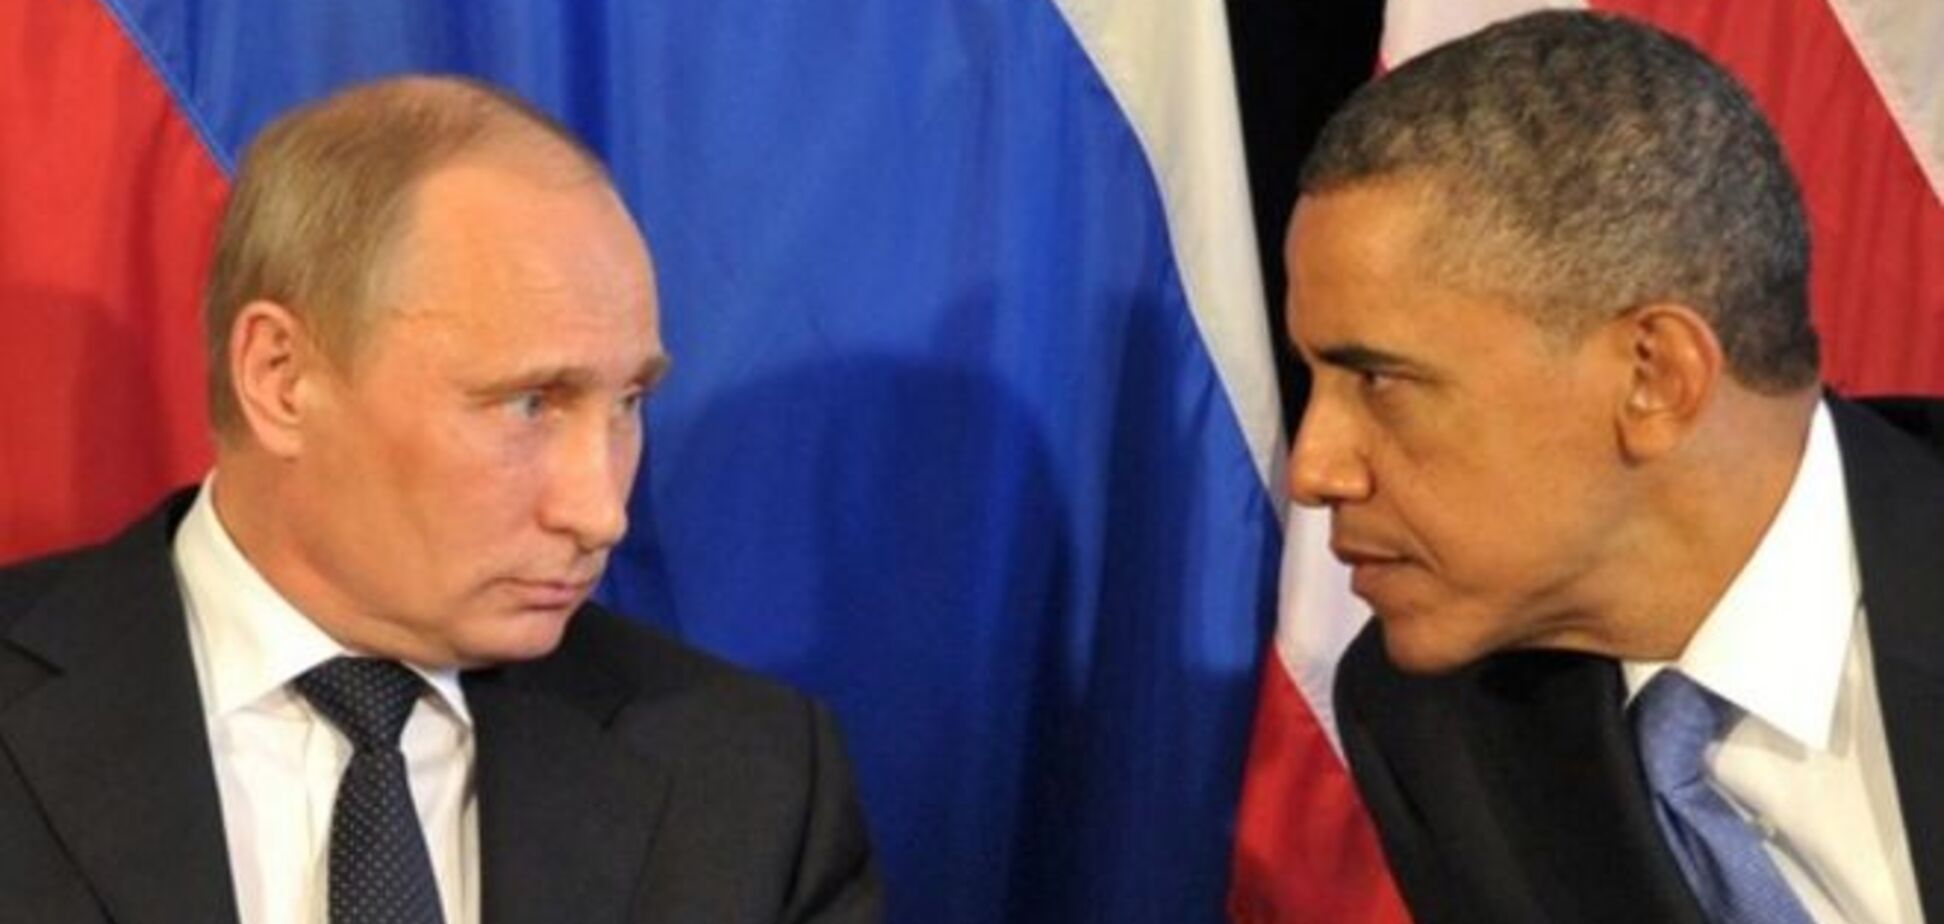 Американский аналитик предложил Западу новый способ сдерживания Путина - Newsweek